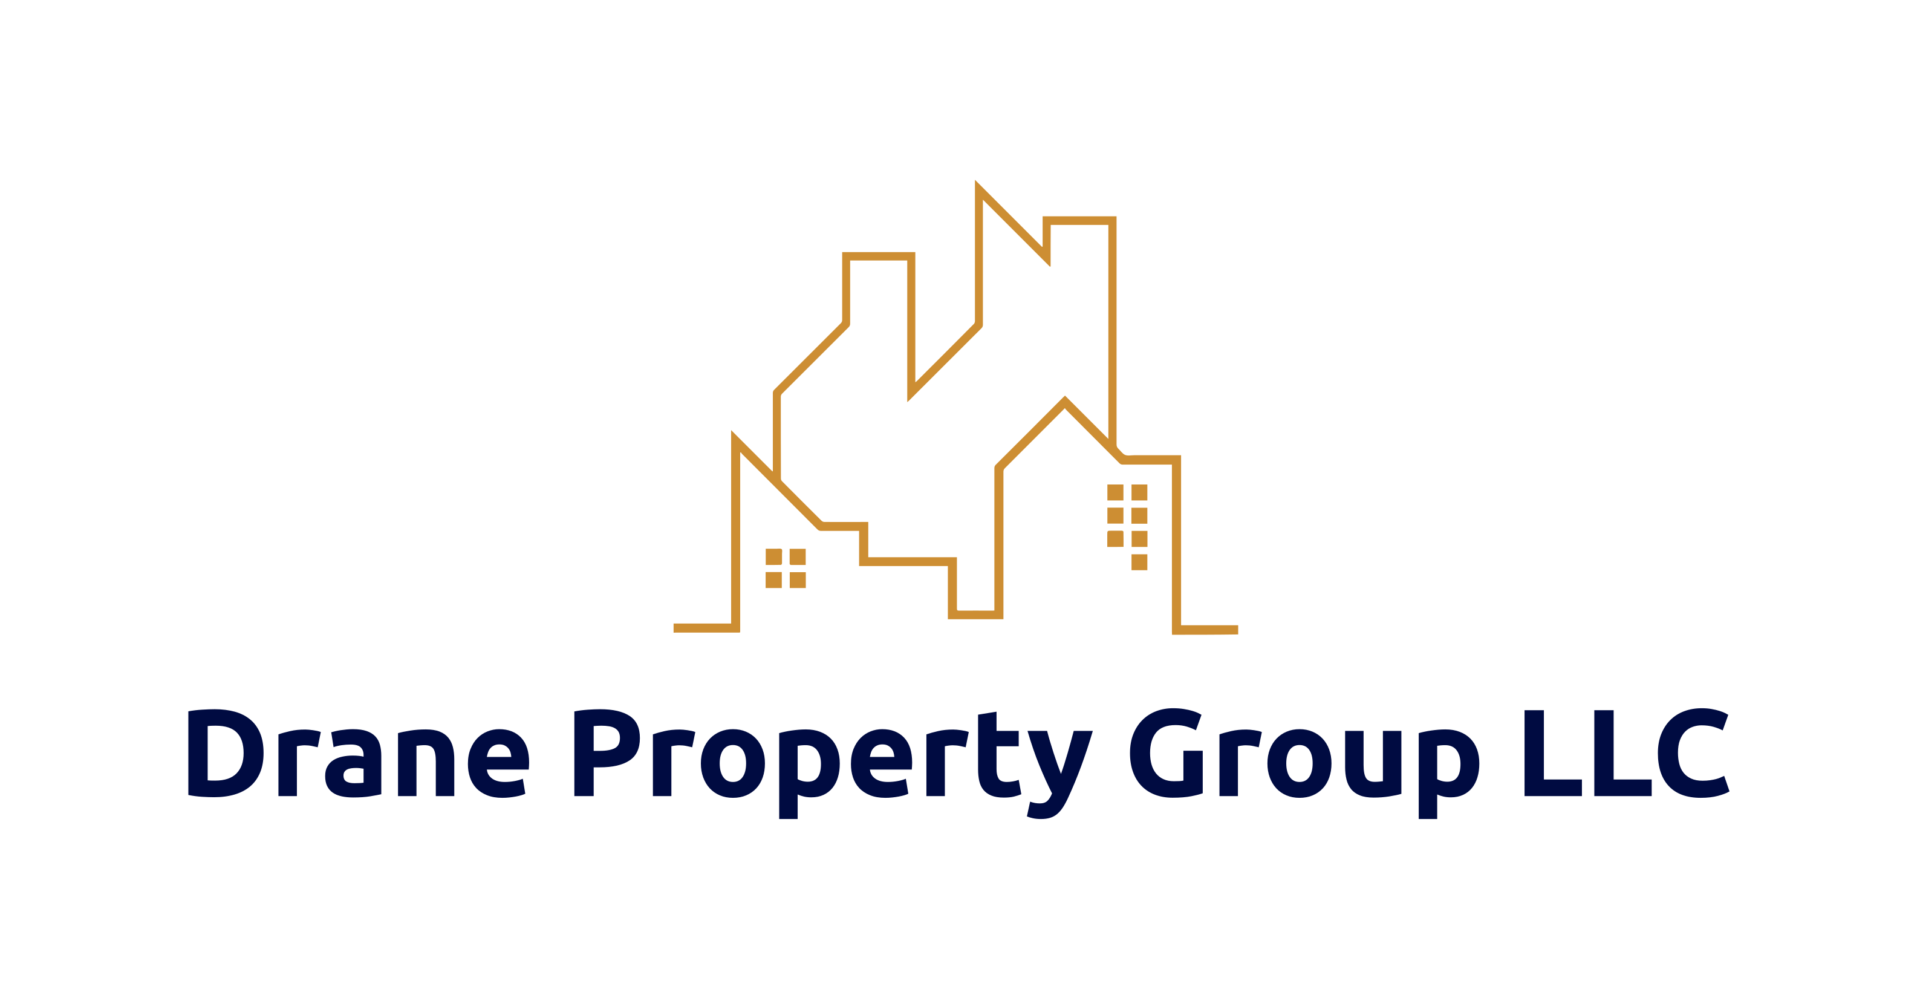 Drane Property Group LLC logo